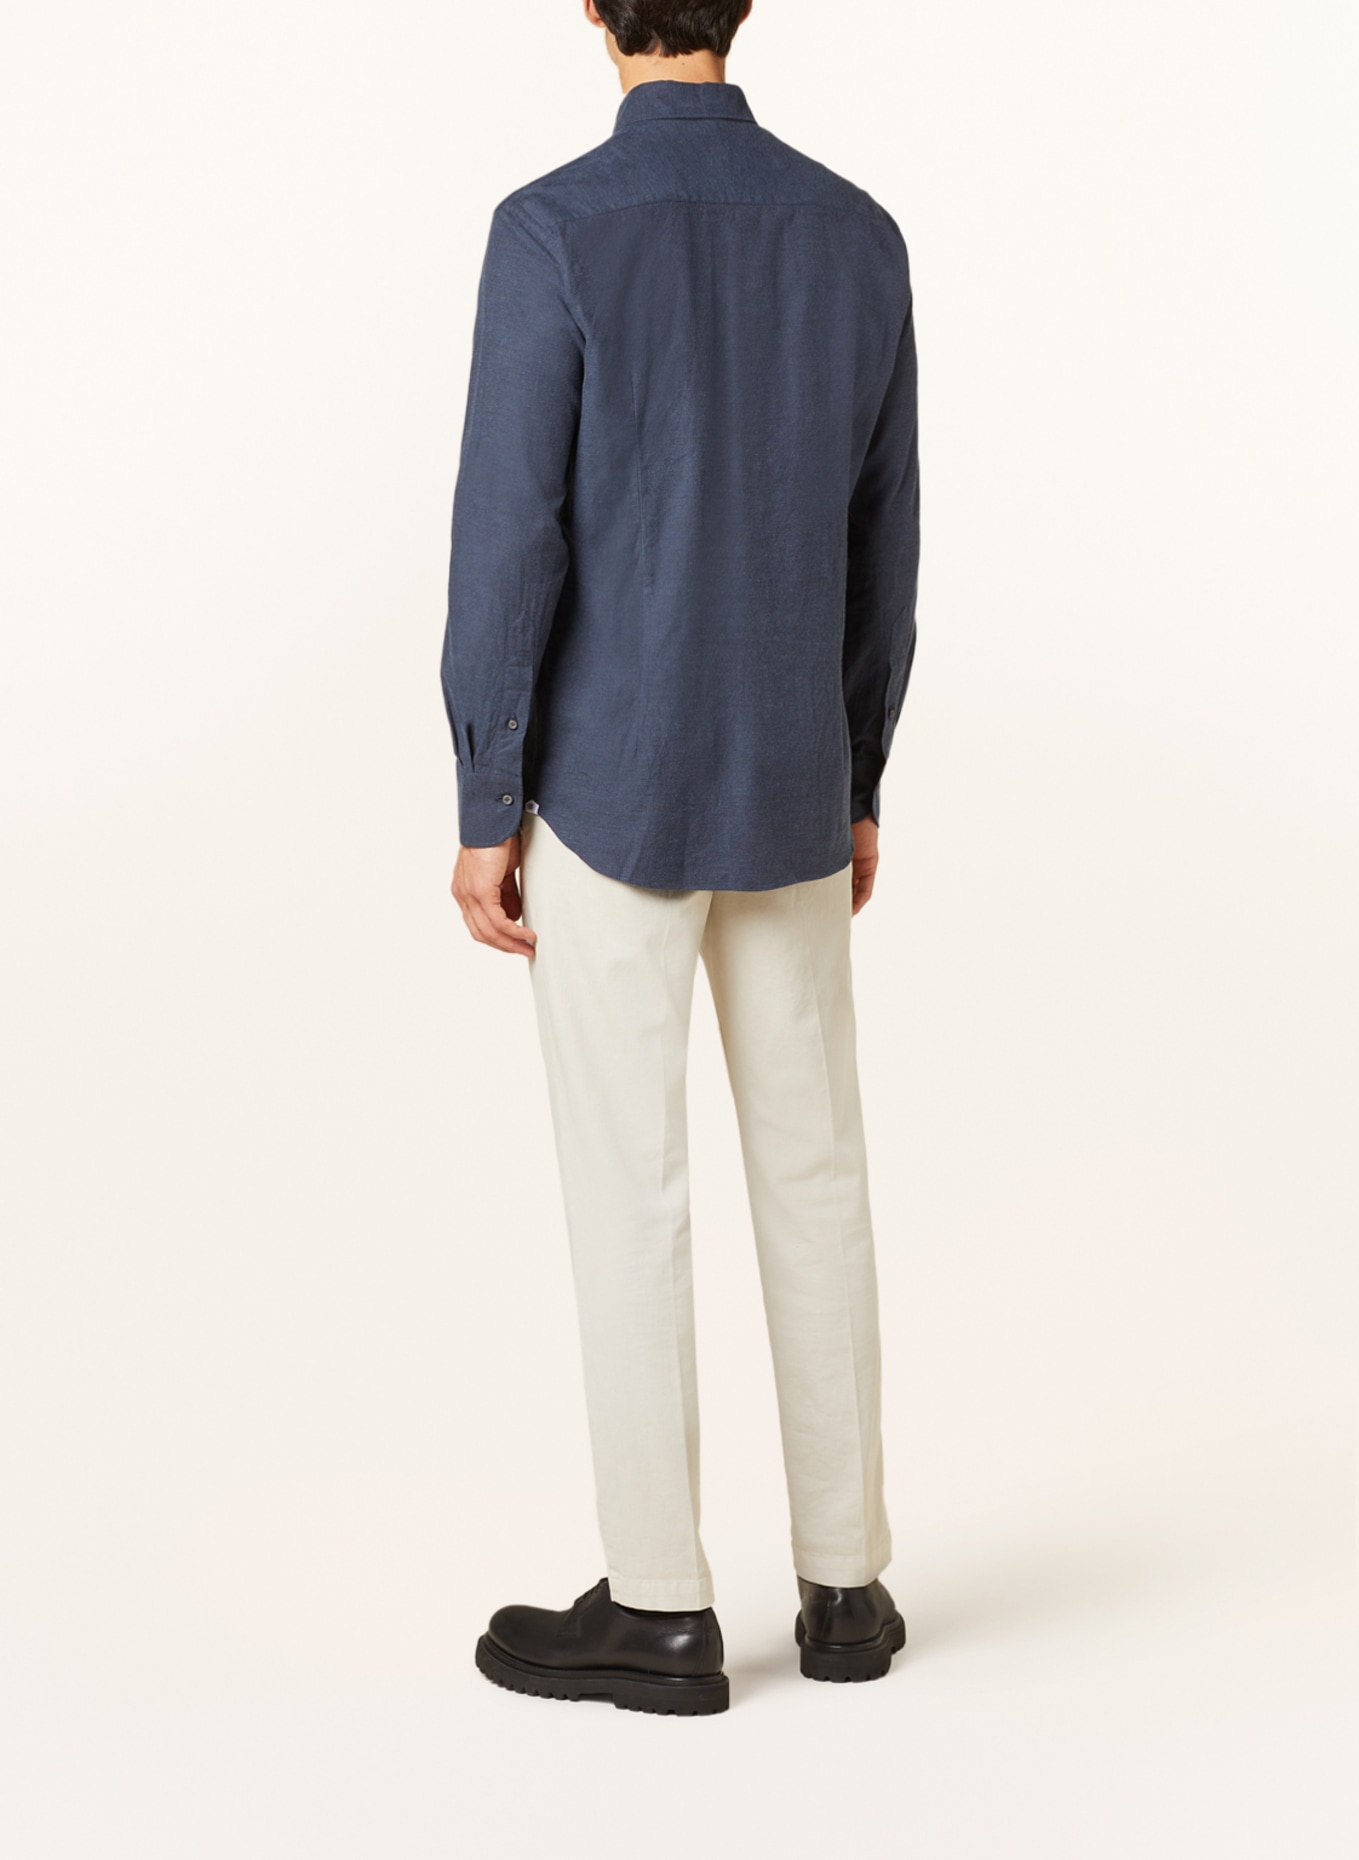 ARTIGIANO Flannel shirt regular fit, Color: BLUE GRAY (Image 3)